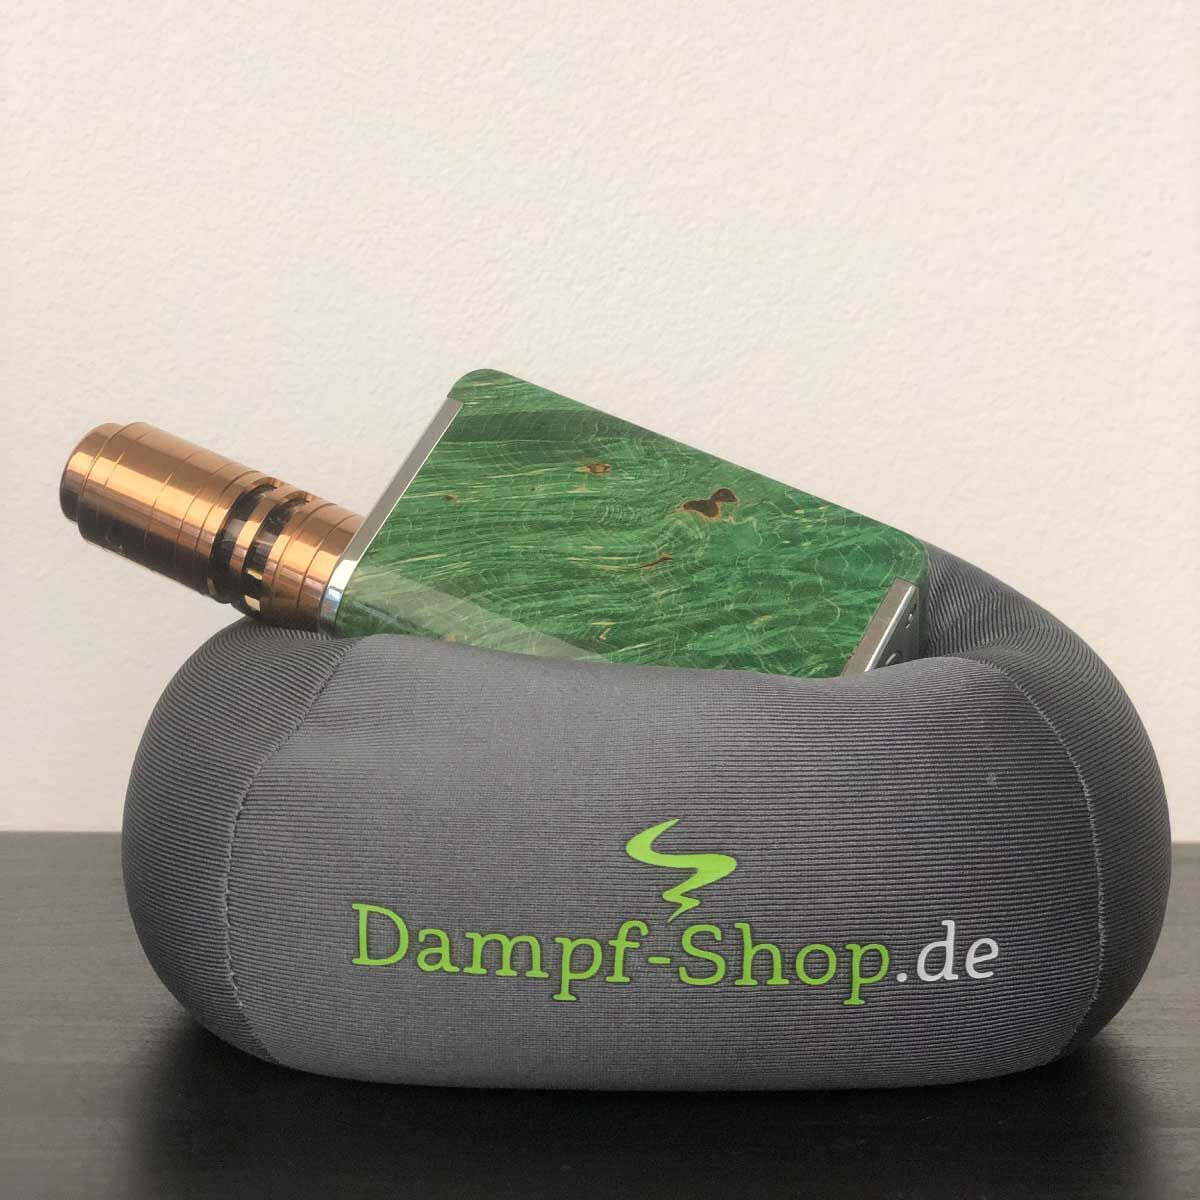 Vapillow Dampfer-Kissen mit Dampf-Shop.de Motiv